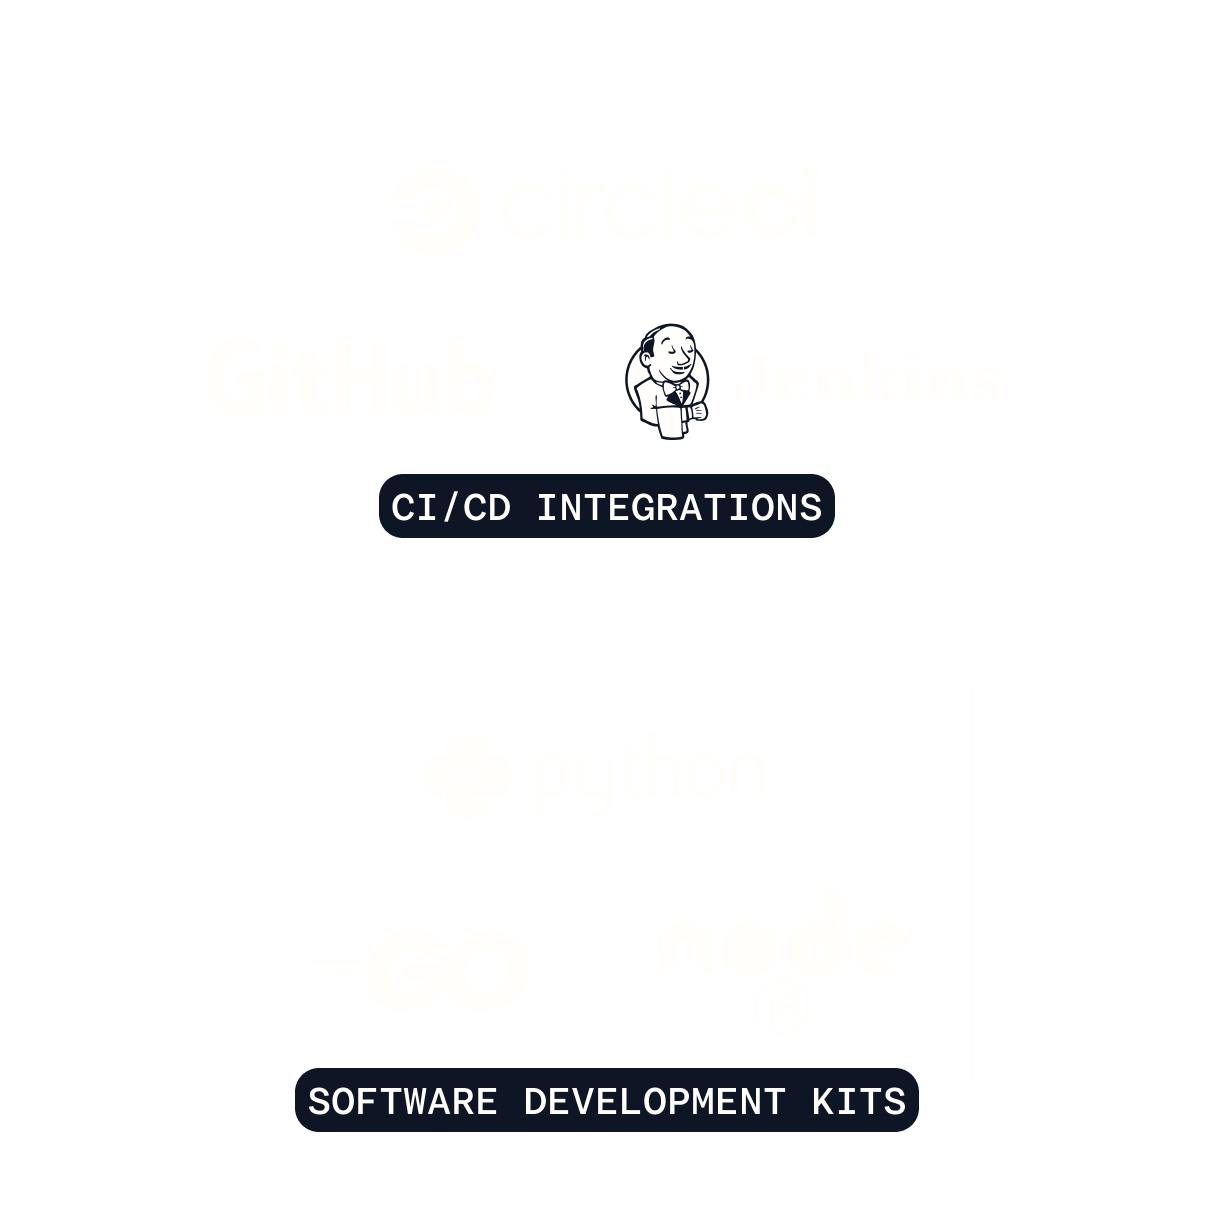 Elenco di integrazioni CI/CD 1Password, tra cui le integrazioni CircleCI, GitHub e Jenkins e SDK, tra cui Python, Go e Node.js.